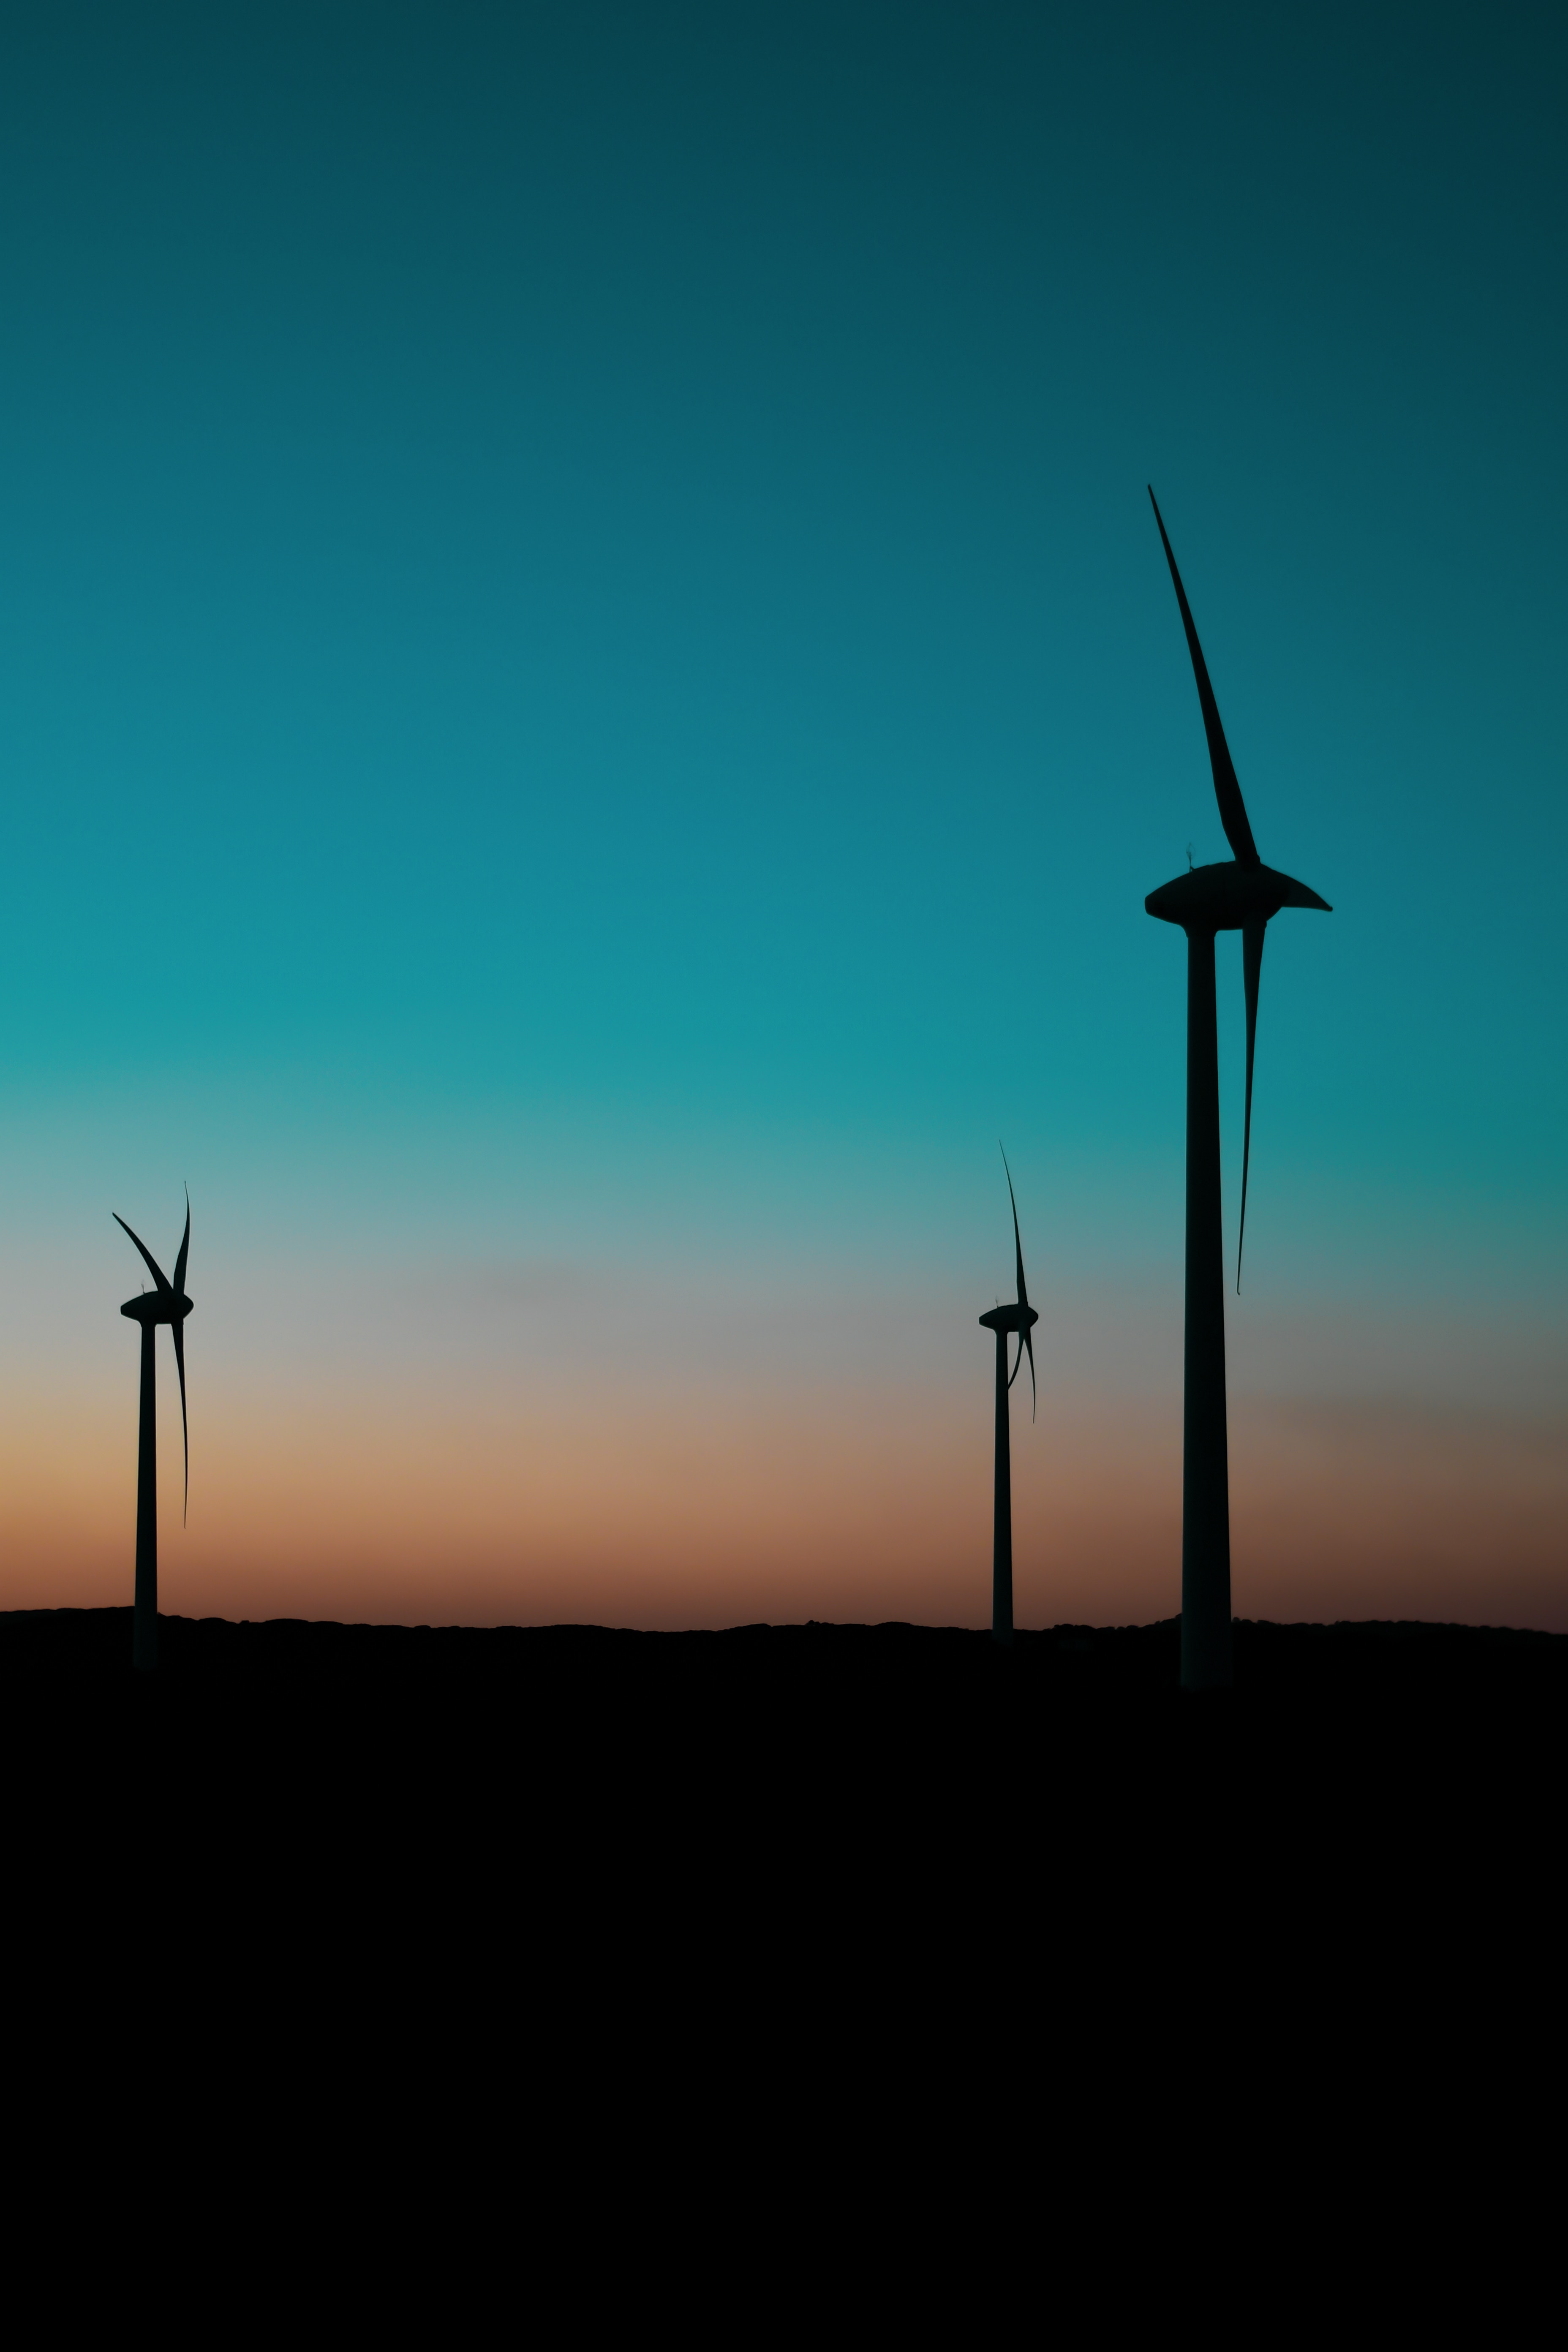 twilight, dark, dusk, pillars, posts, wind power plant, turbines, turbine, blades